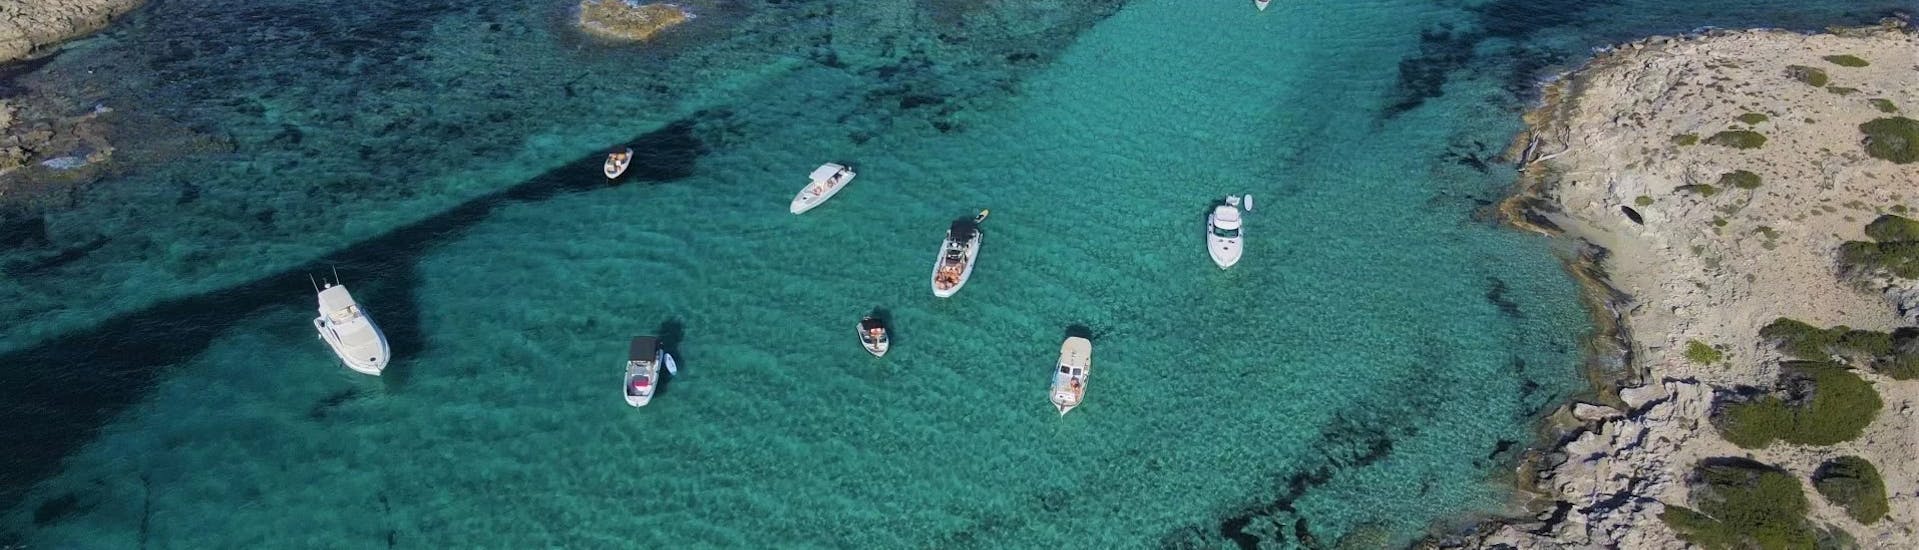 Vistas de un alquiler de barco en Santa Eulalia, Ibiza (hasta 6 personas) sin licencia con Eiviboats Ibiza.